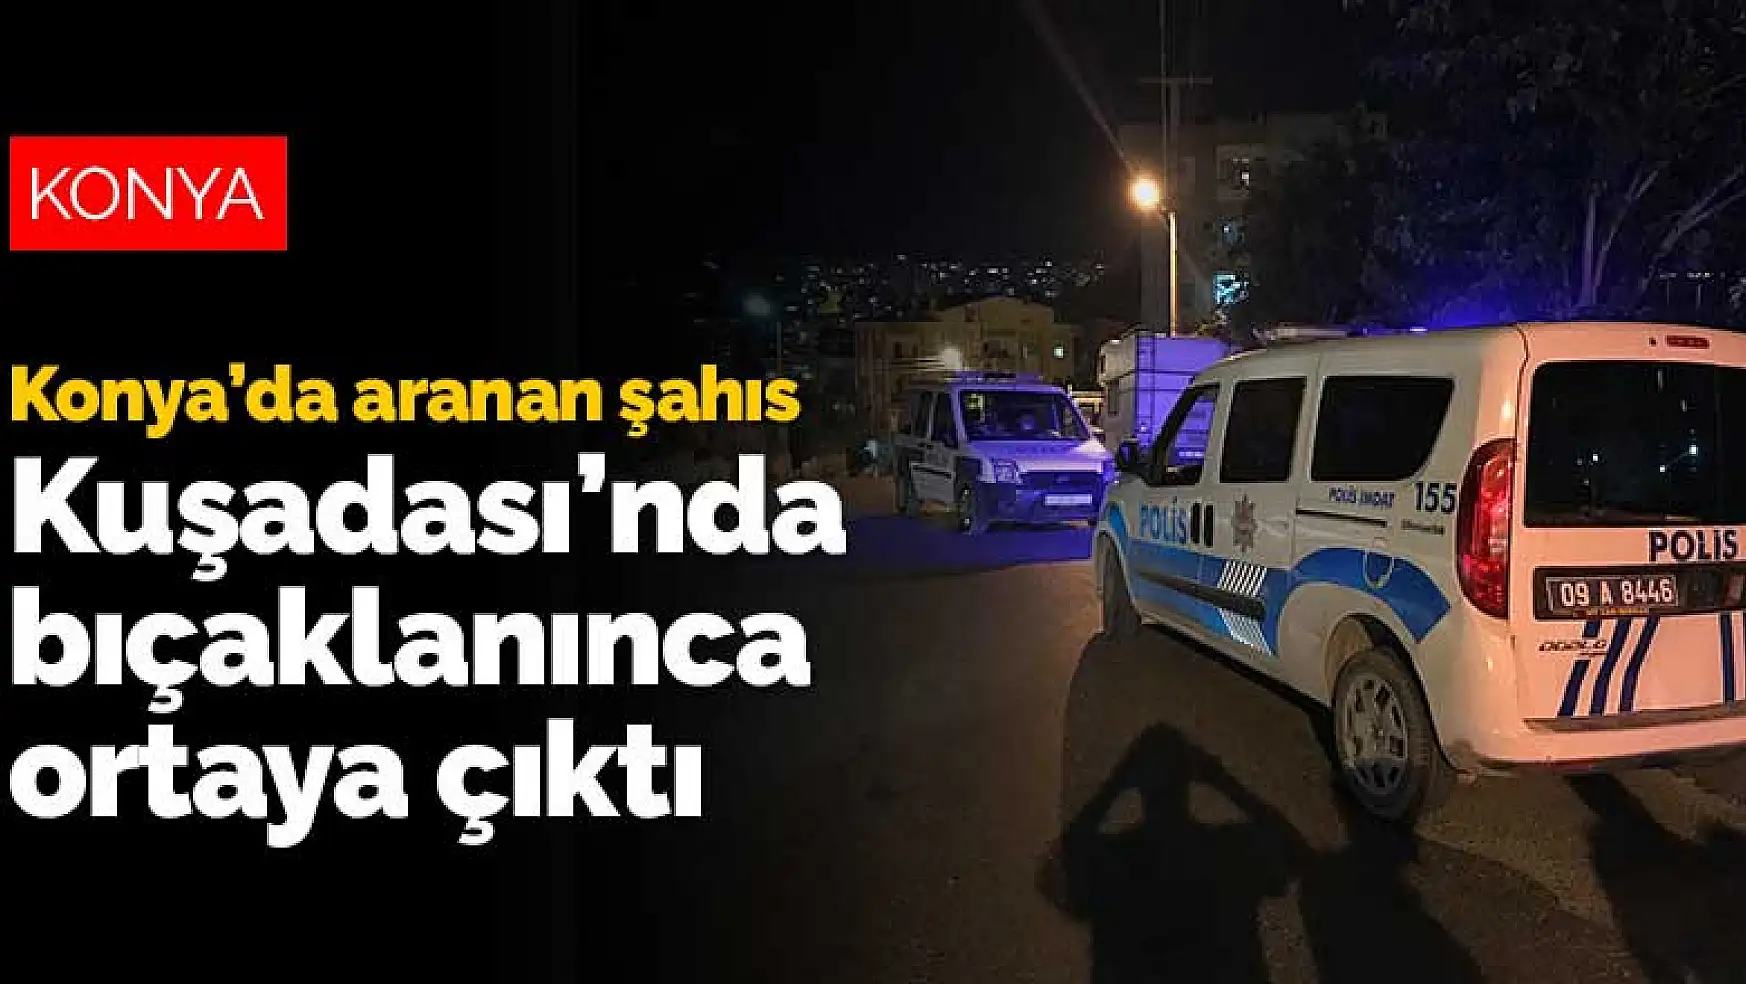 Konya'da dolandırıcılıktan aranan şahıs Kuşadası'nda bıçaklanınca ortaya çıktı